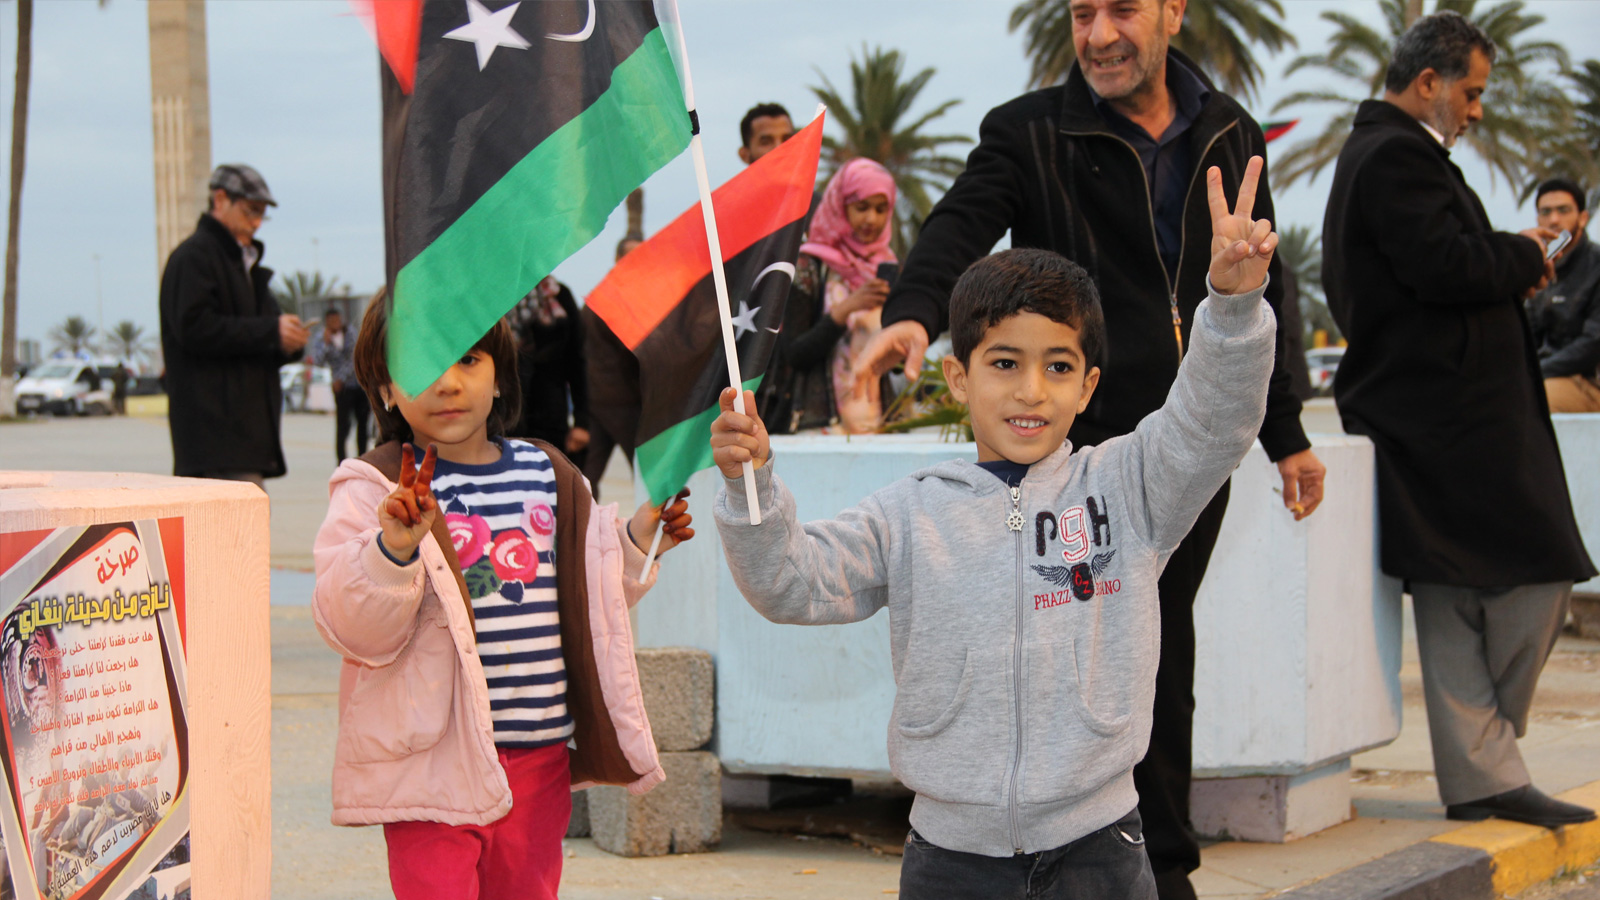 ‪‬ طفل يرفع علم ليبيا في ميدان الشهداء أثناء احتفالات بذكرى الثورة(الجزيرة-أرشيف)